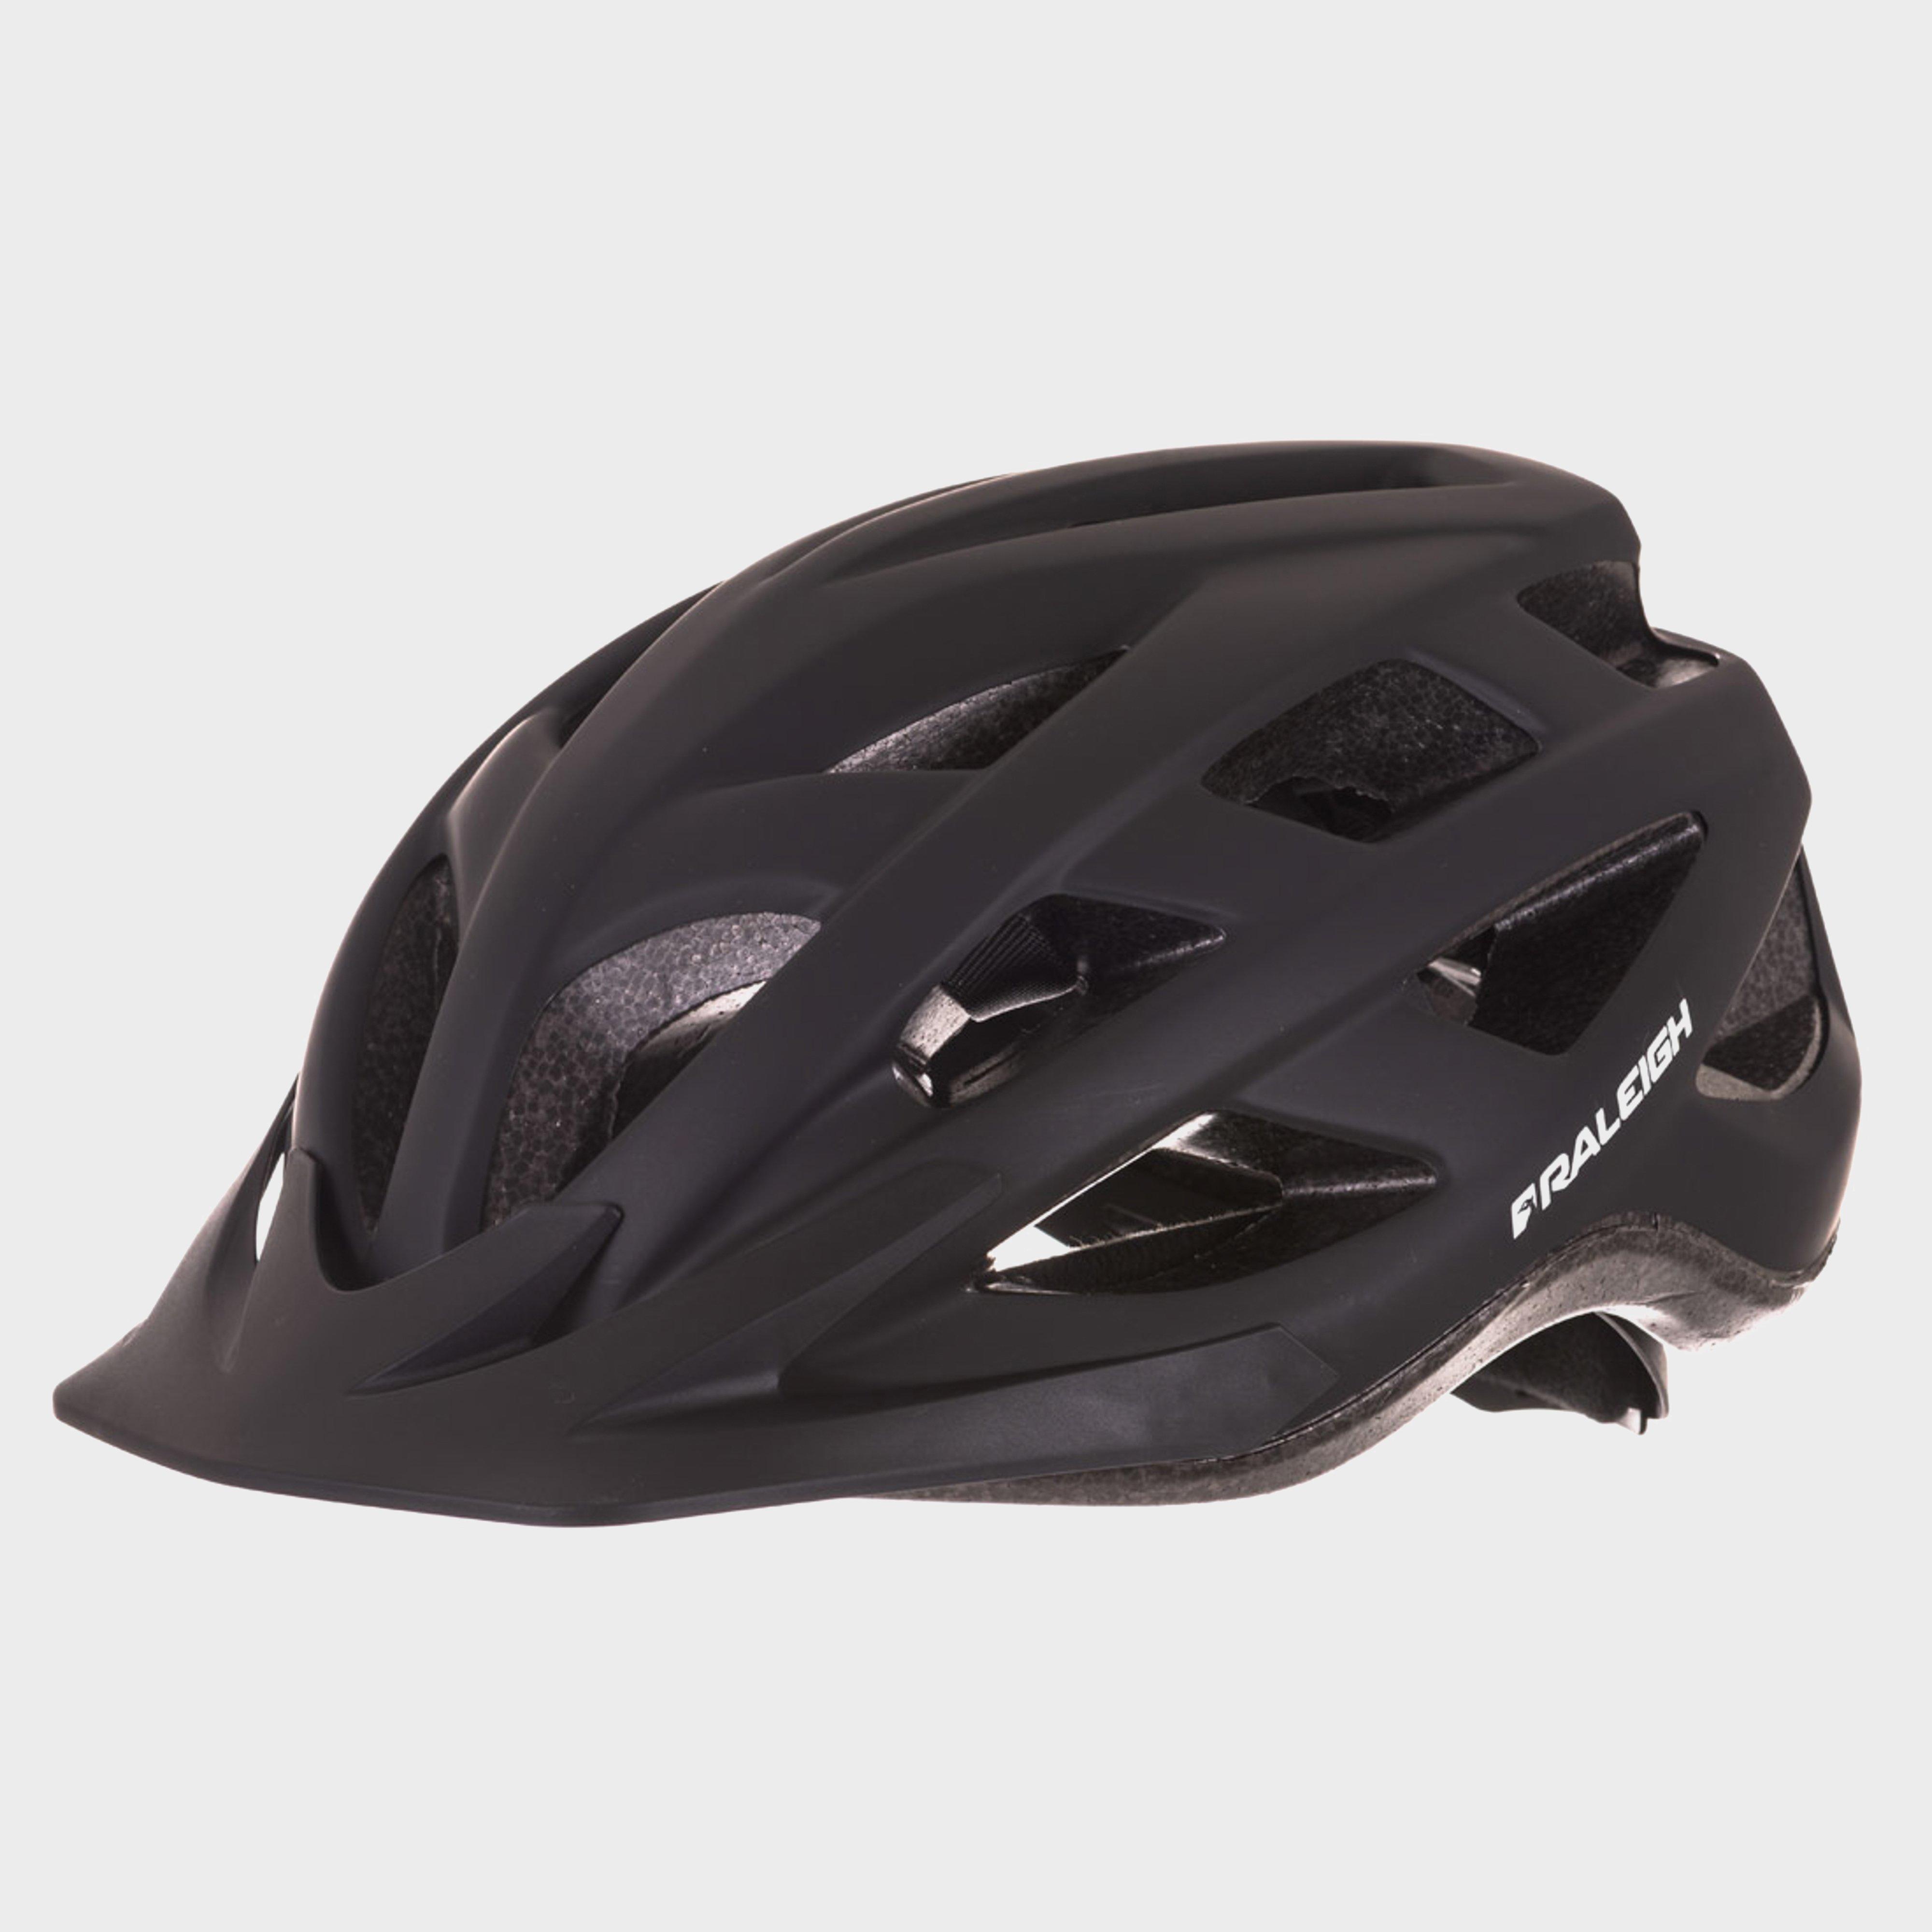 Raleigh Quest Cycling Helmet - Black/helmet  Black/helmet